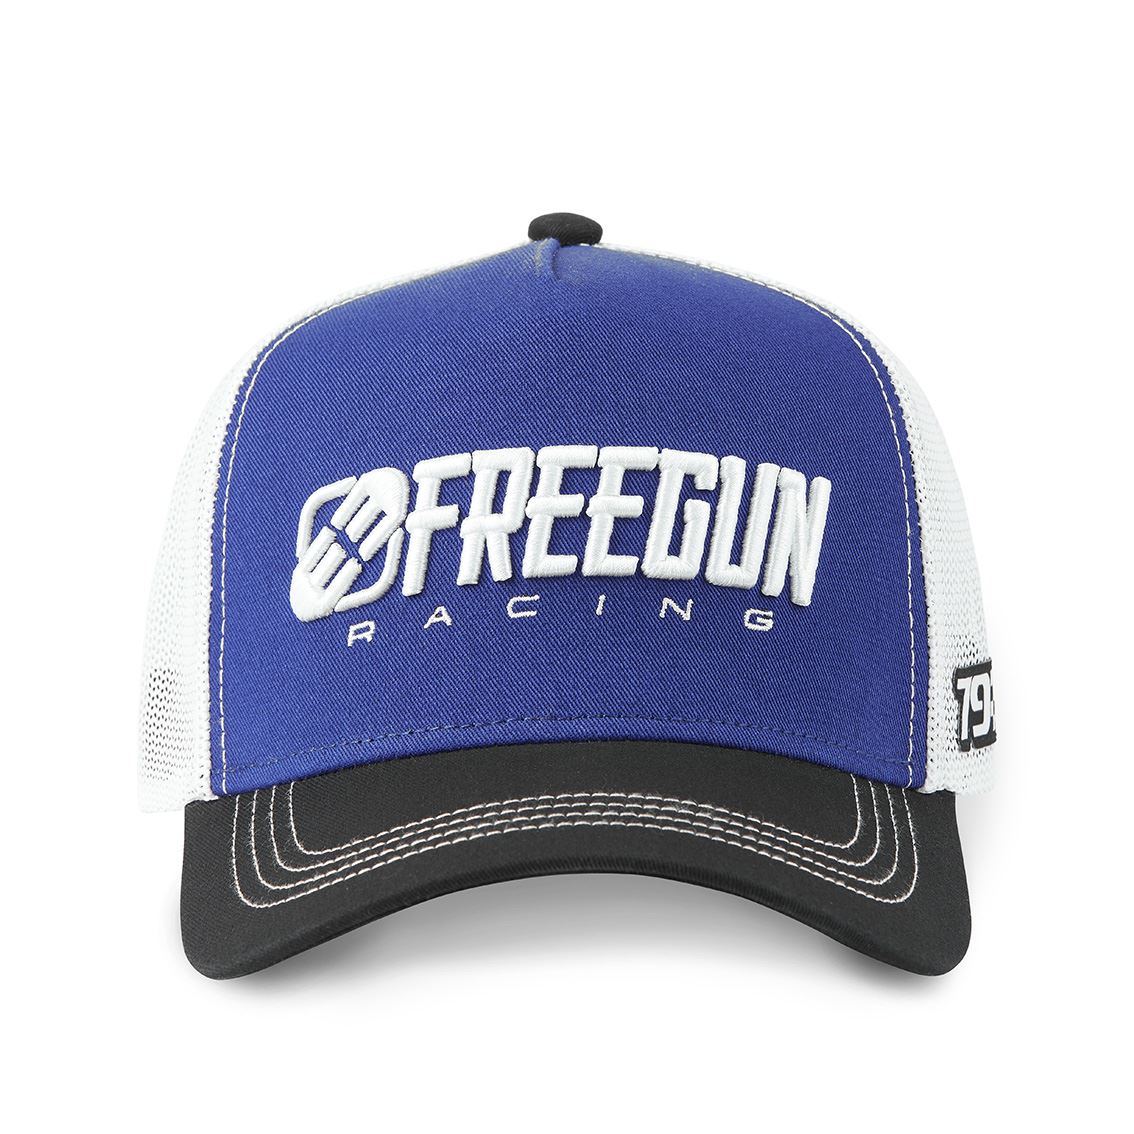 Freegun Racing (Blue)